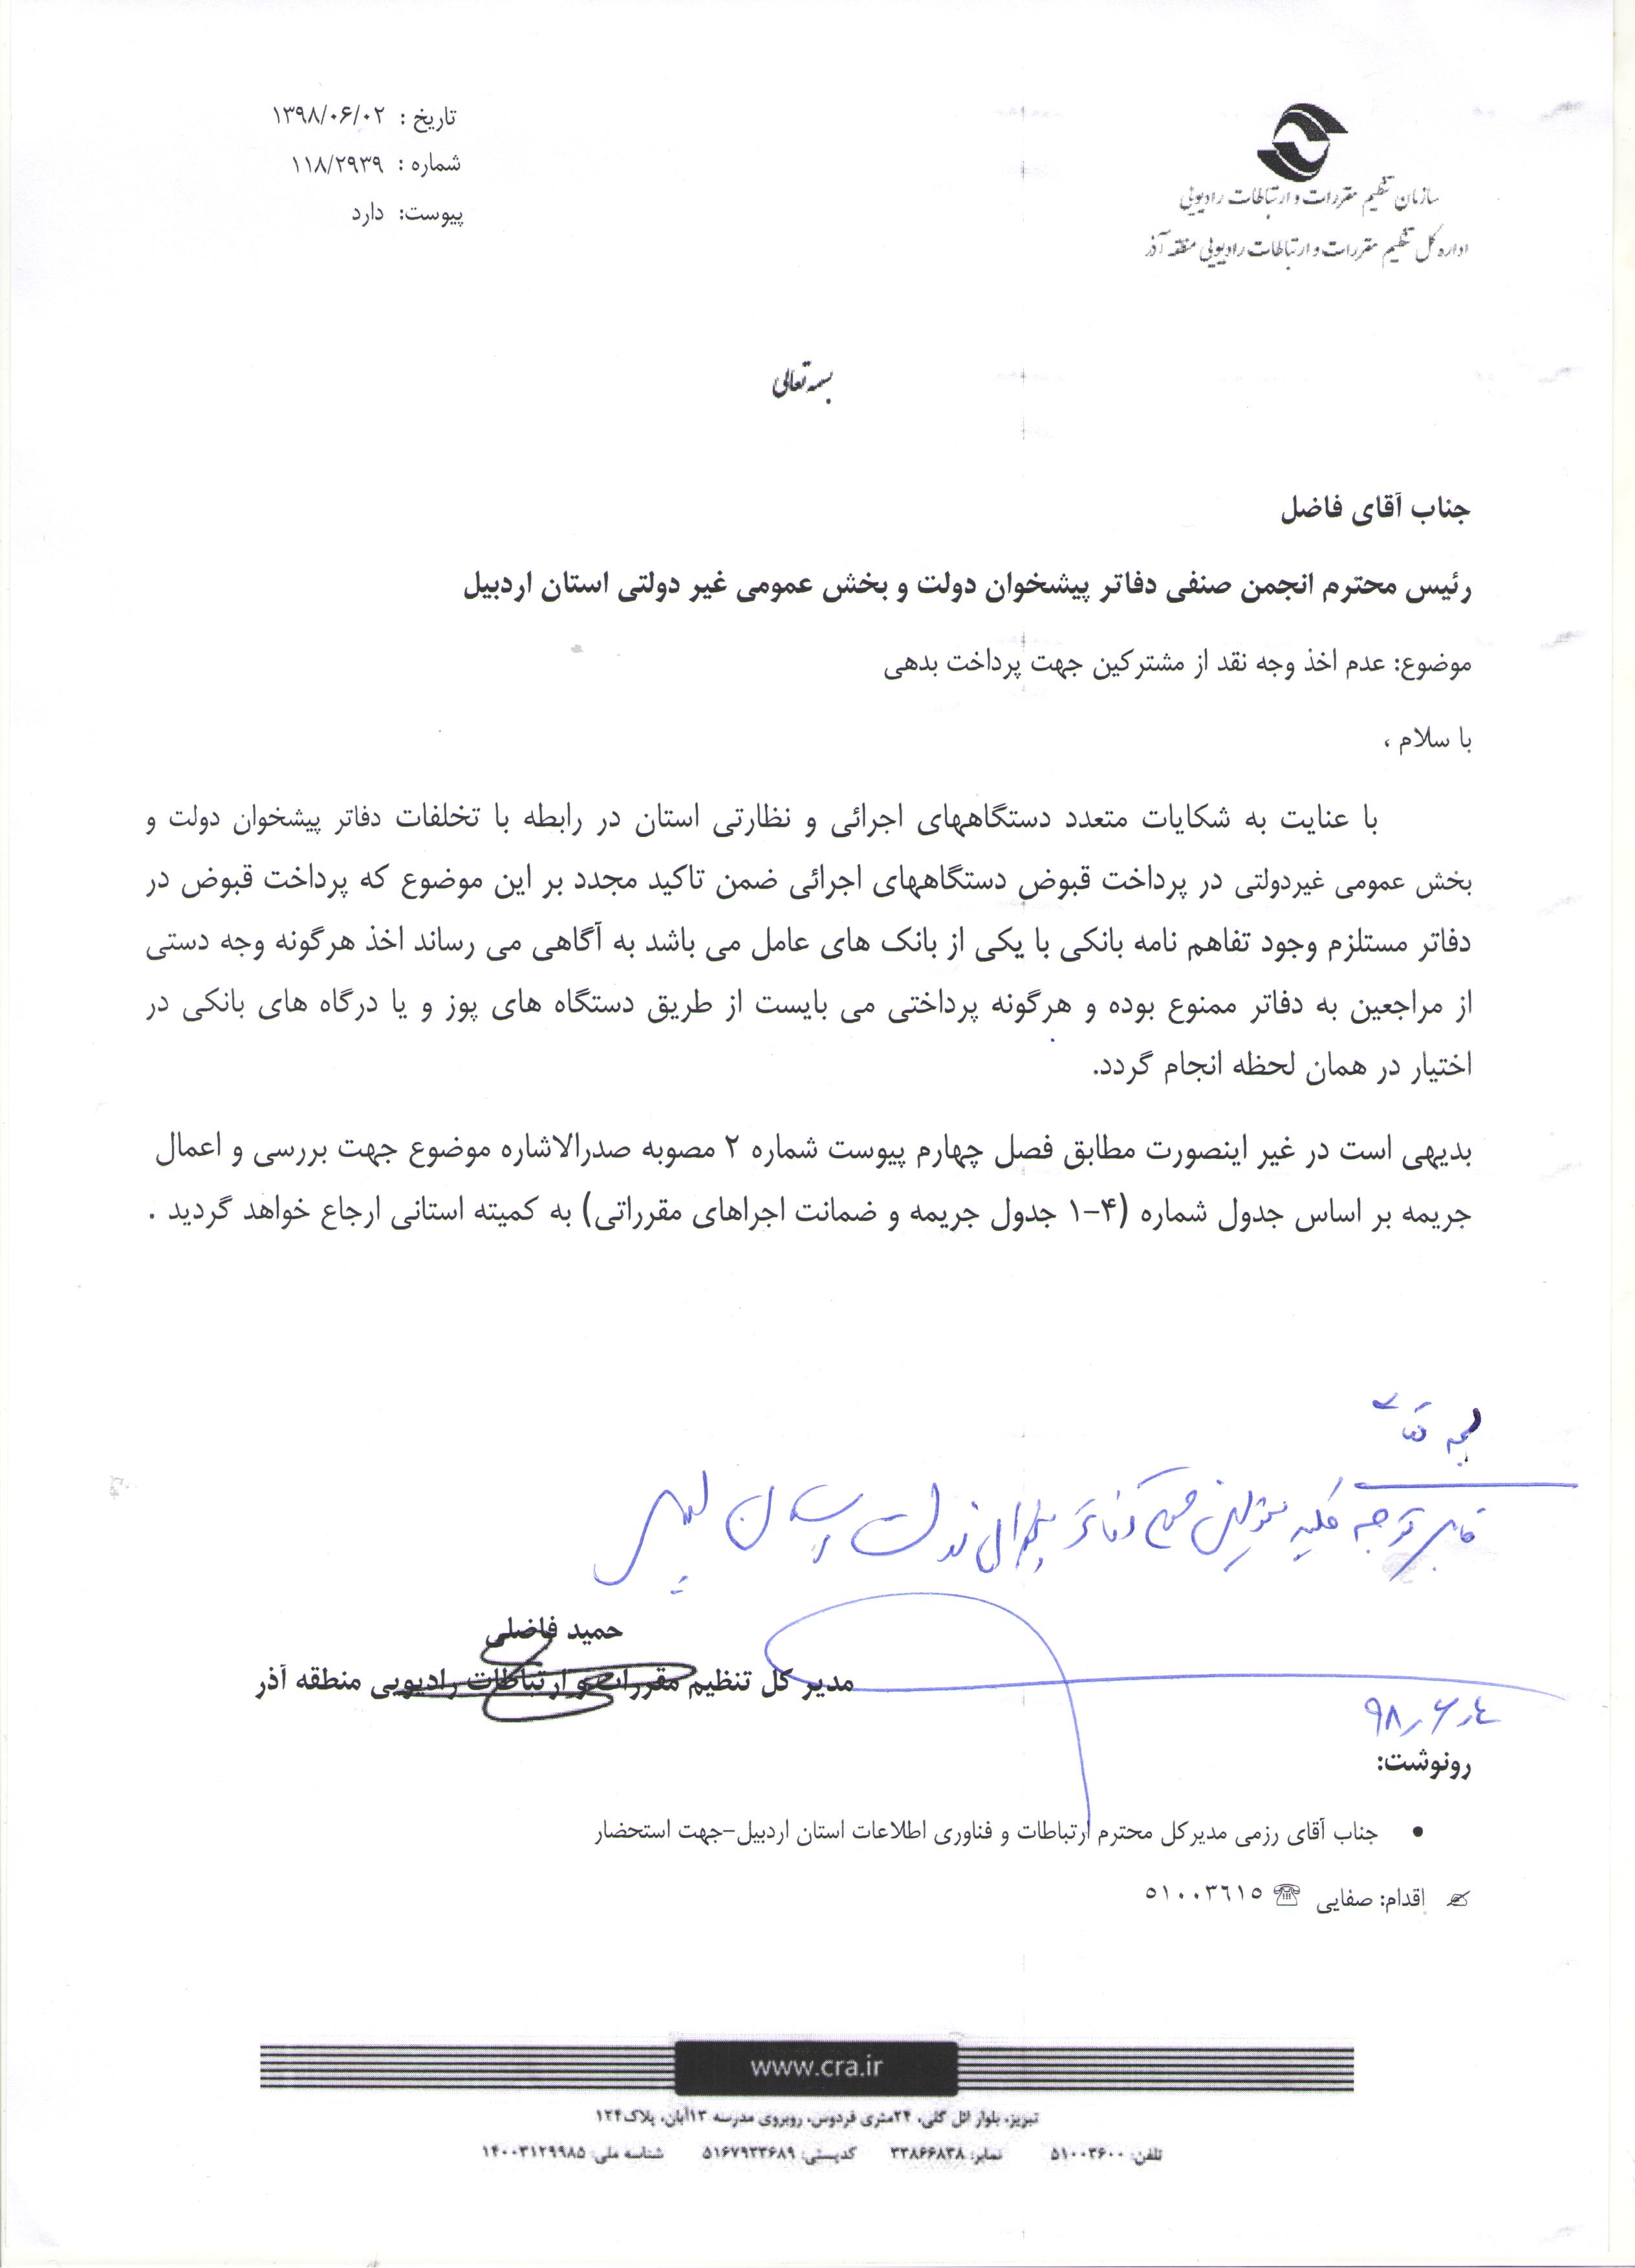 سازمان تنظیم مقررات و ارتباطات رادیویی منطقه آذر( عدم اخذ وجه نقد)